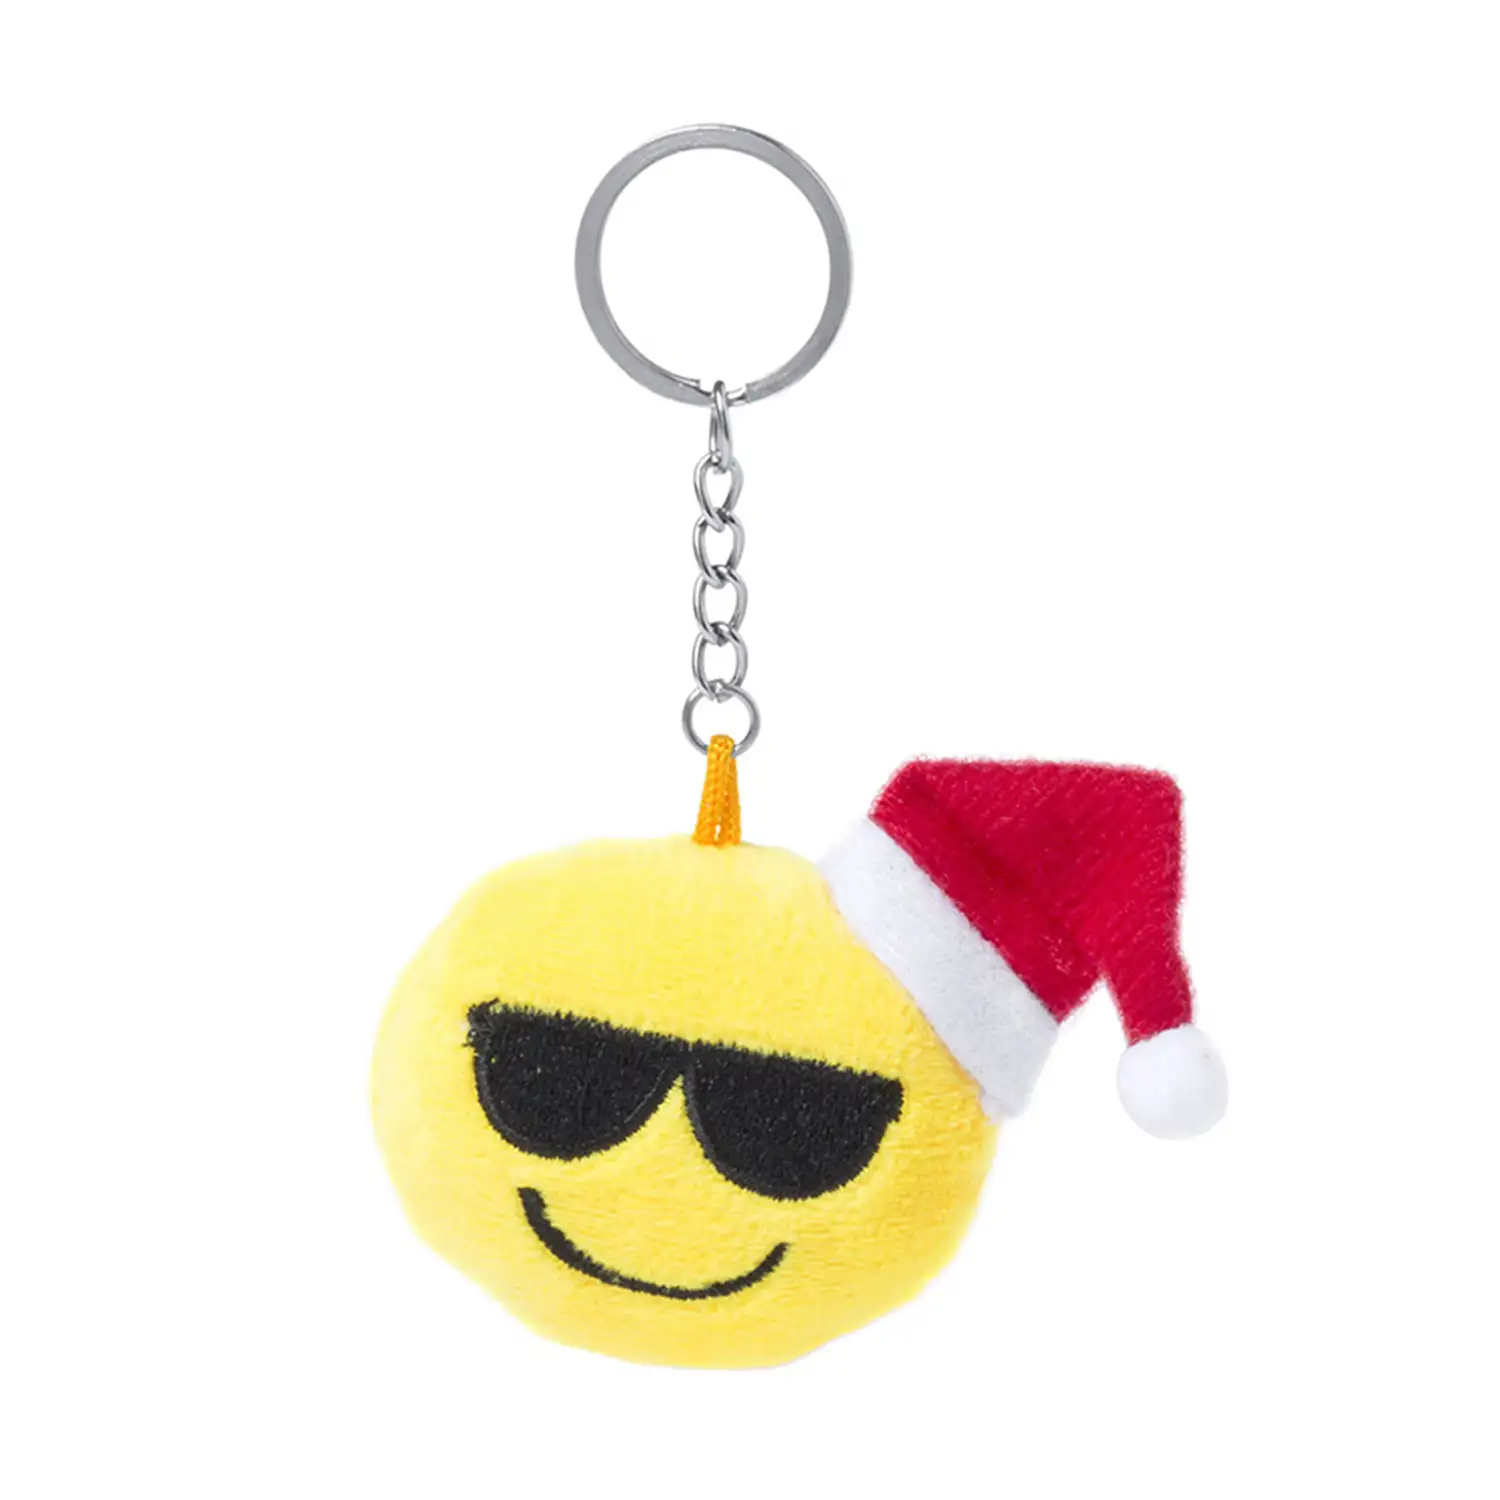 Llavero de peluche de diseño emoji navideño con gafas de sol.